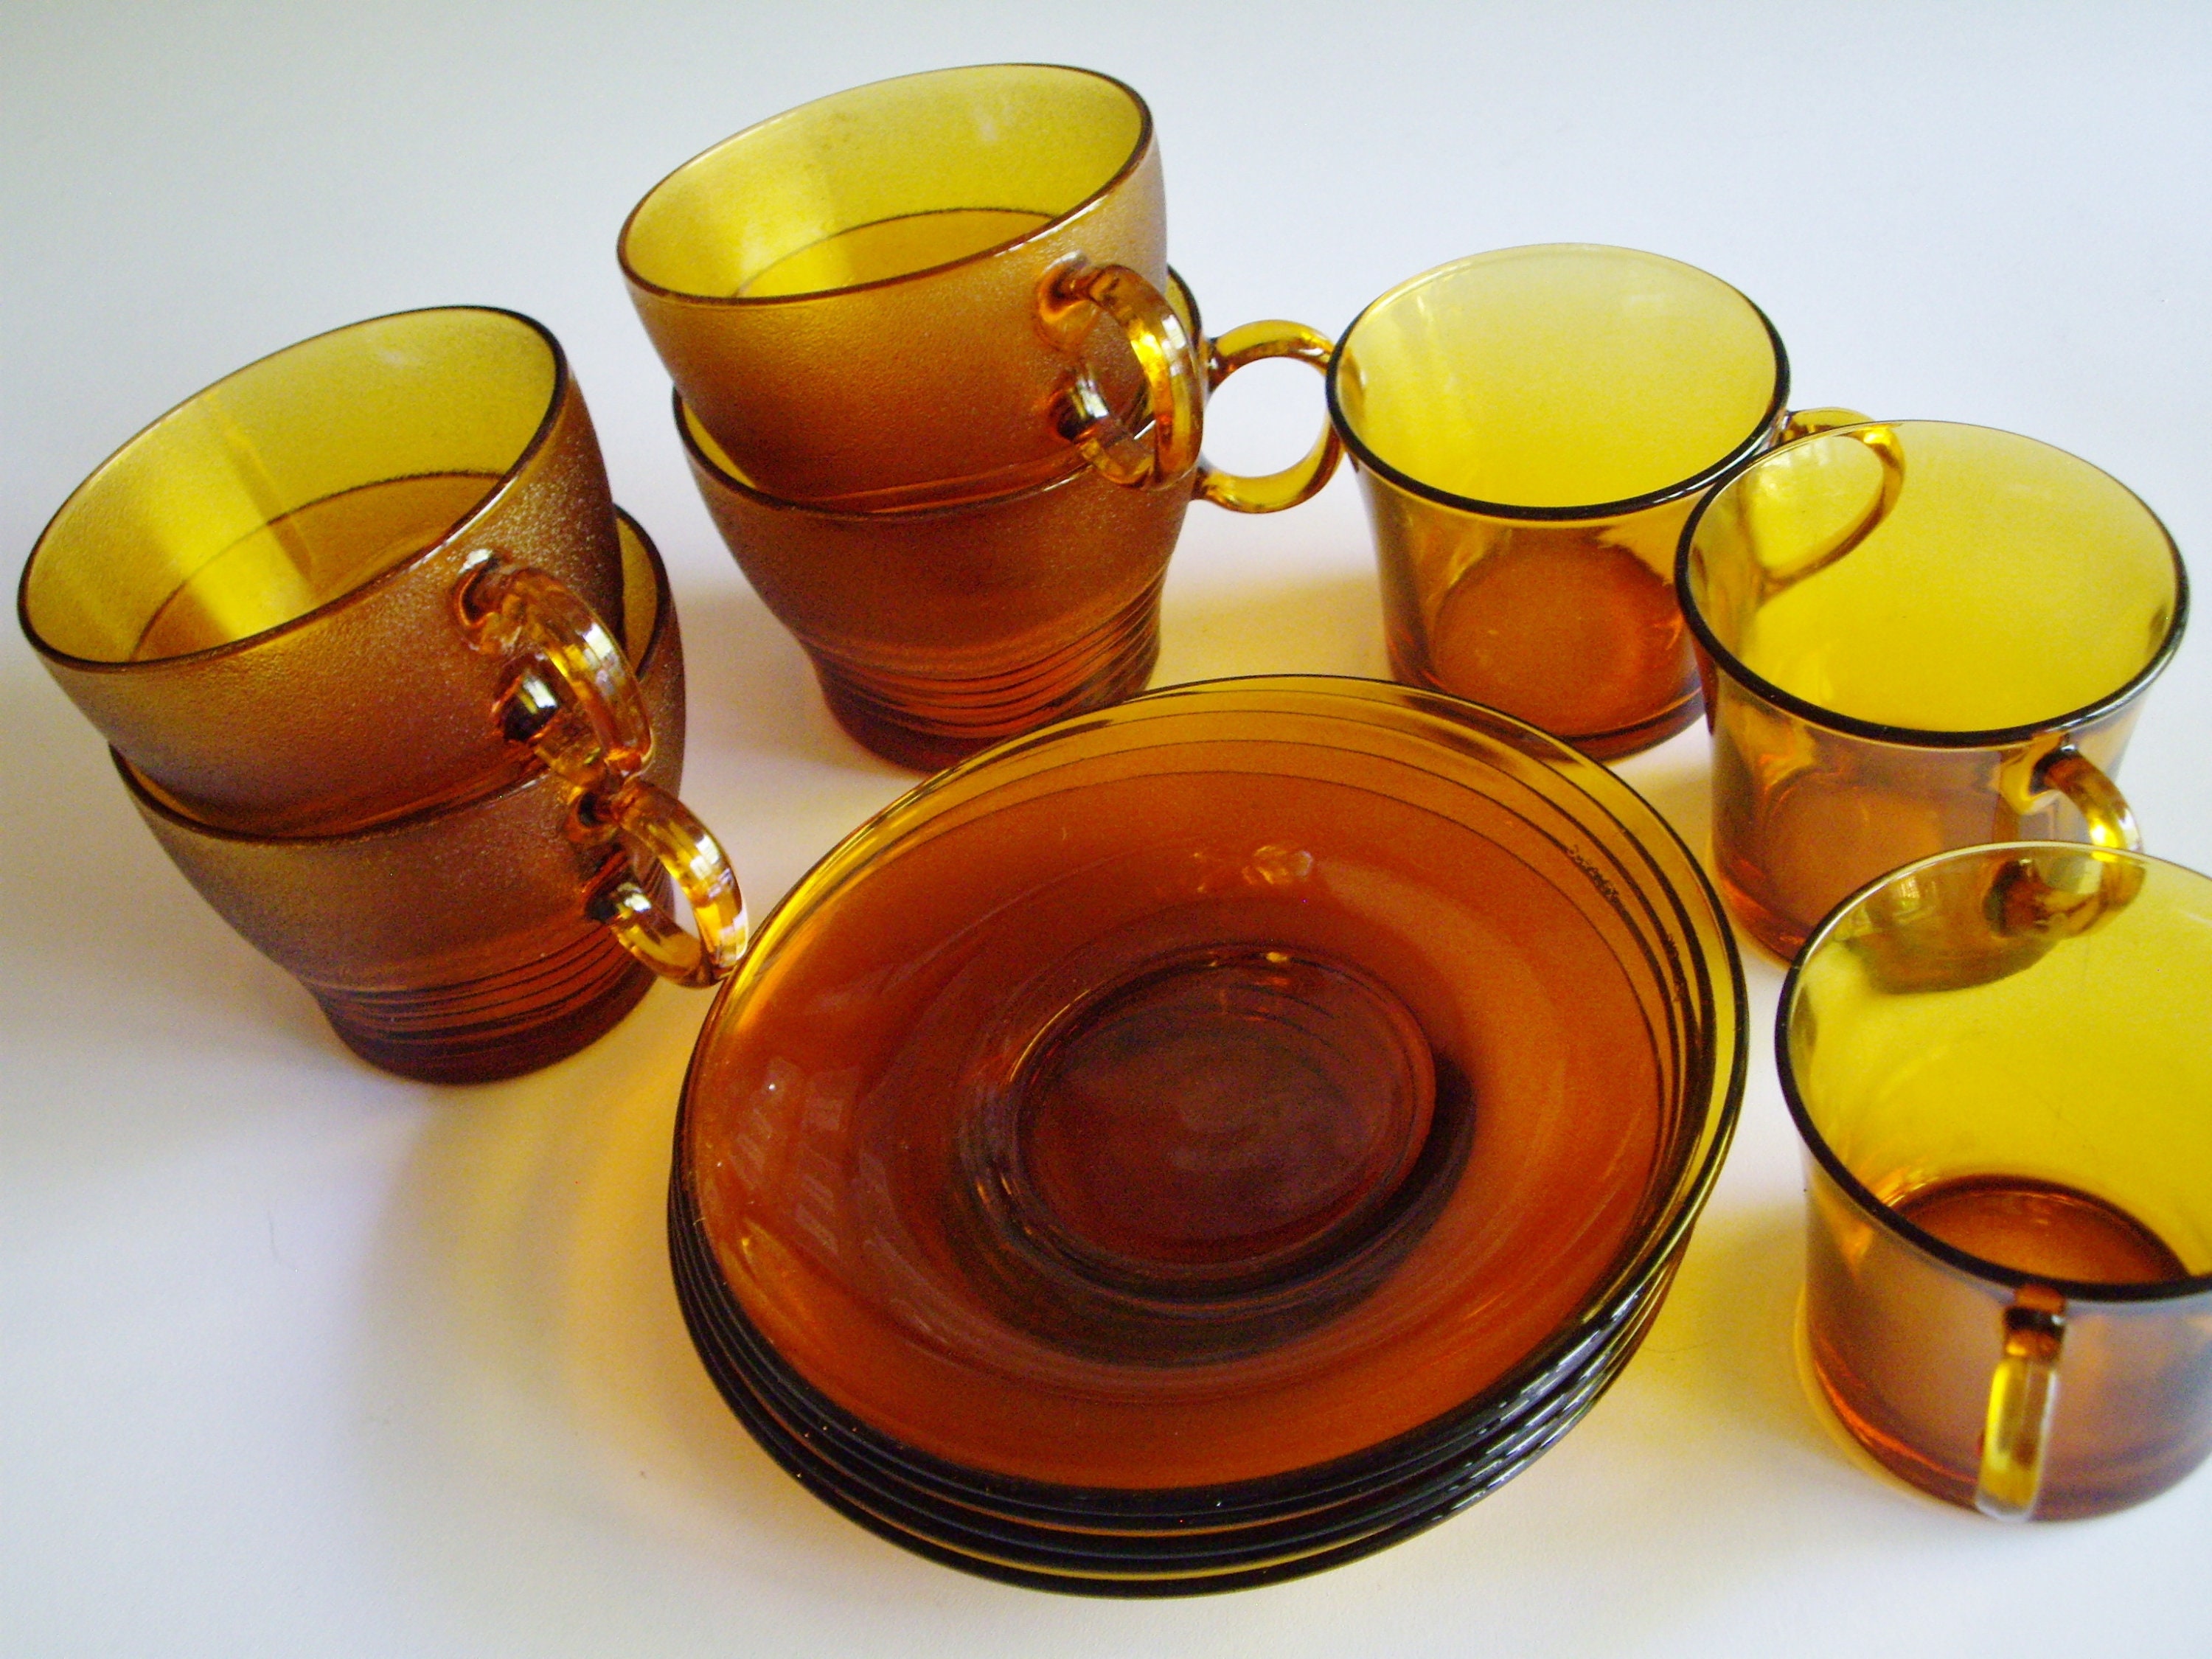 Cómo conseguir los míticos vasos, platos y tazas de la marca Duralex